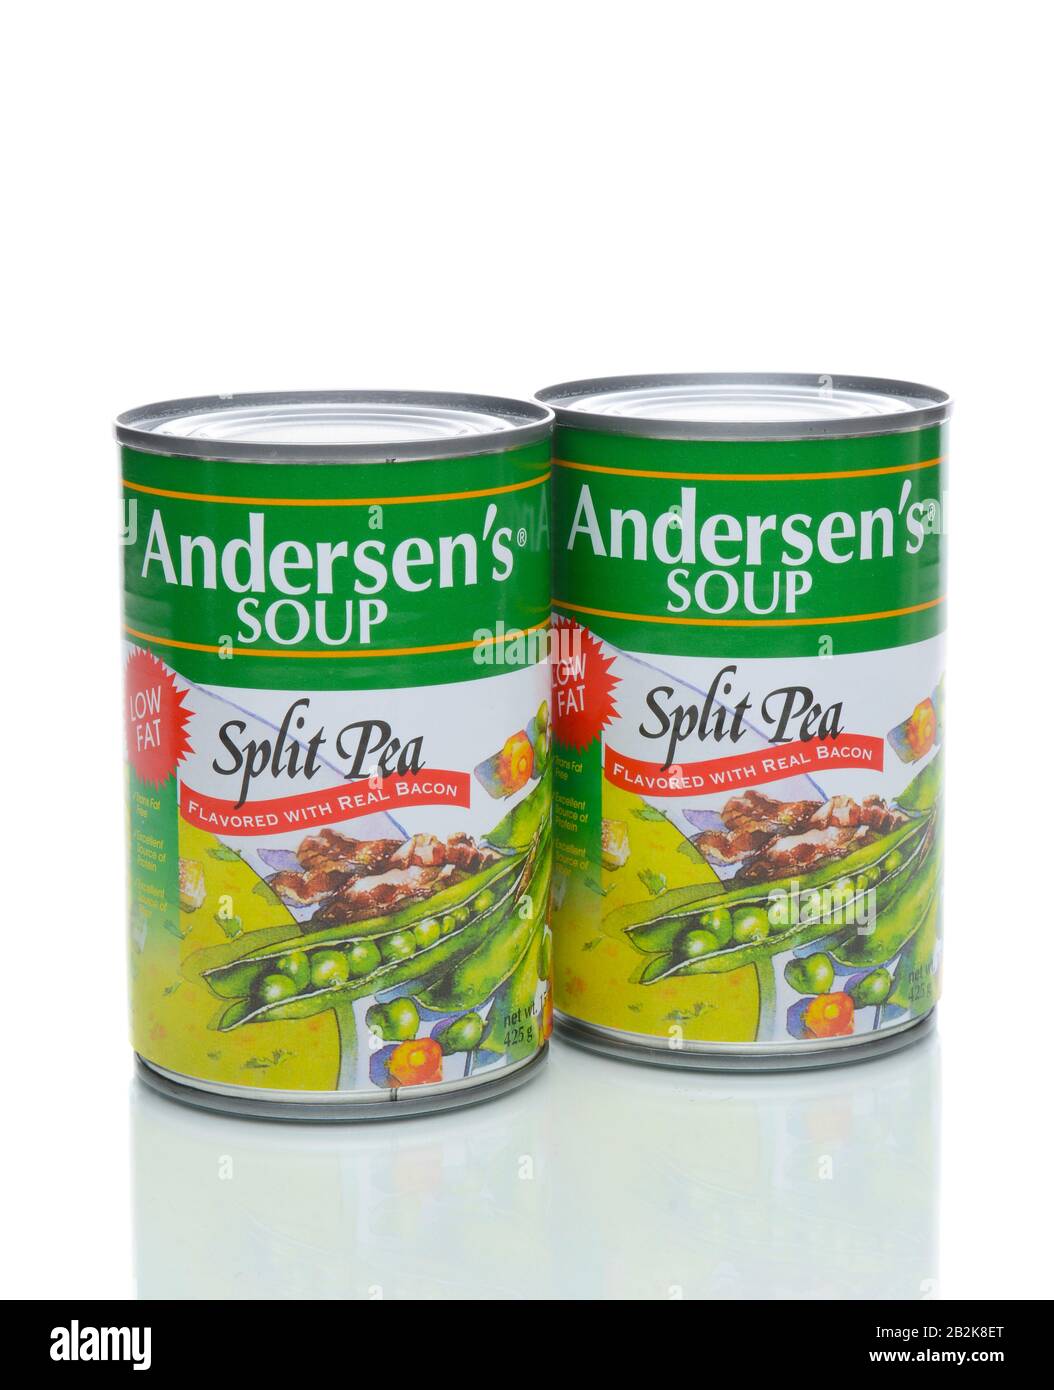 Irvine, California - 4 GENNAIO 2018: Andersens Split Pea con zuppa di bacon. La minestra a basso contenuto di grassi è priva di Grassi trans e una buona fonte di fibre e proteine. Foto Stock